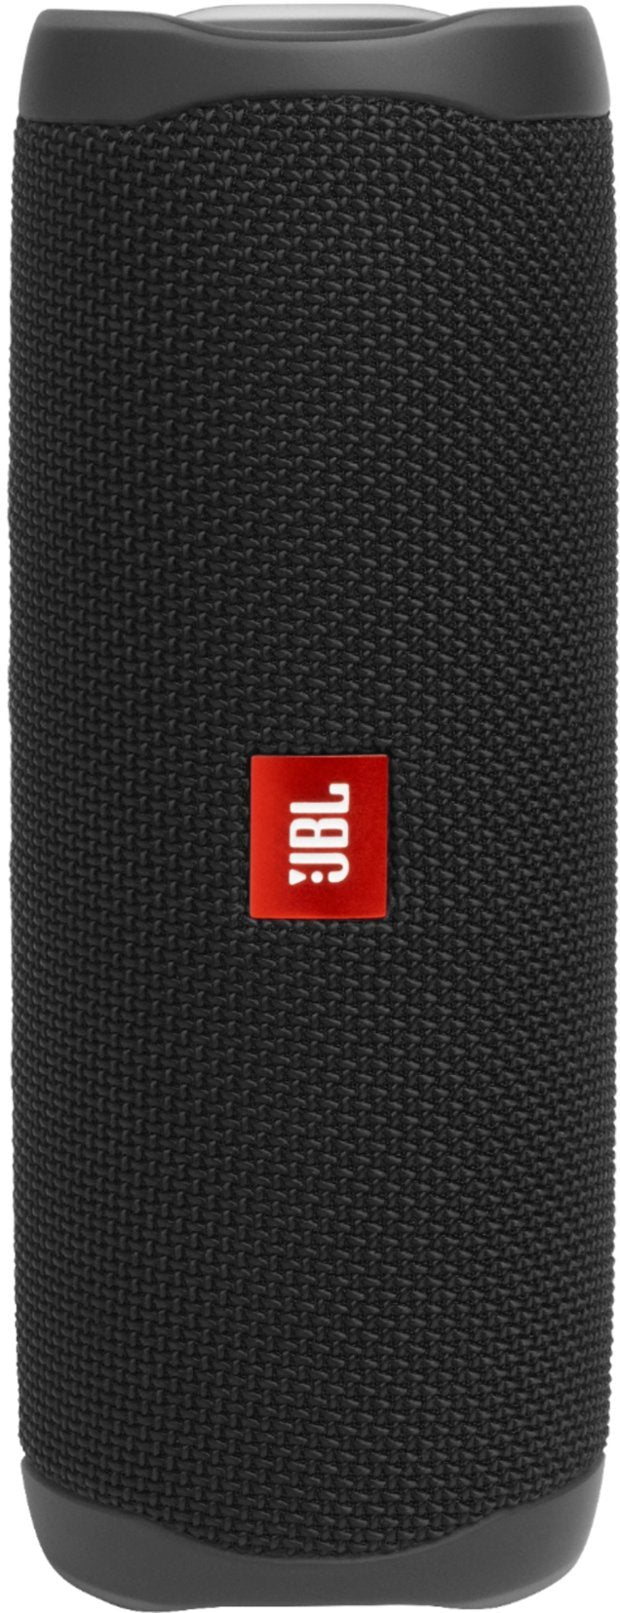 JBL Flip 5 Waterproof Portable Bluetooth Speaker - CN - Black  (Refurbished)